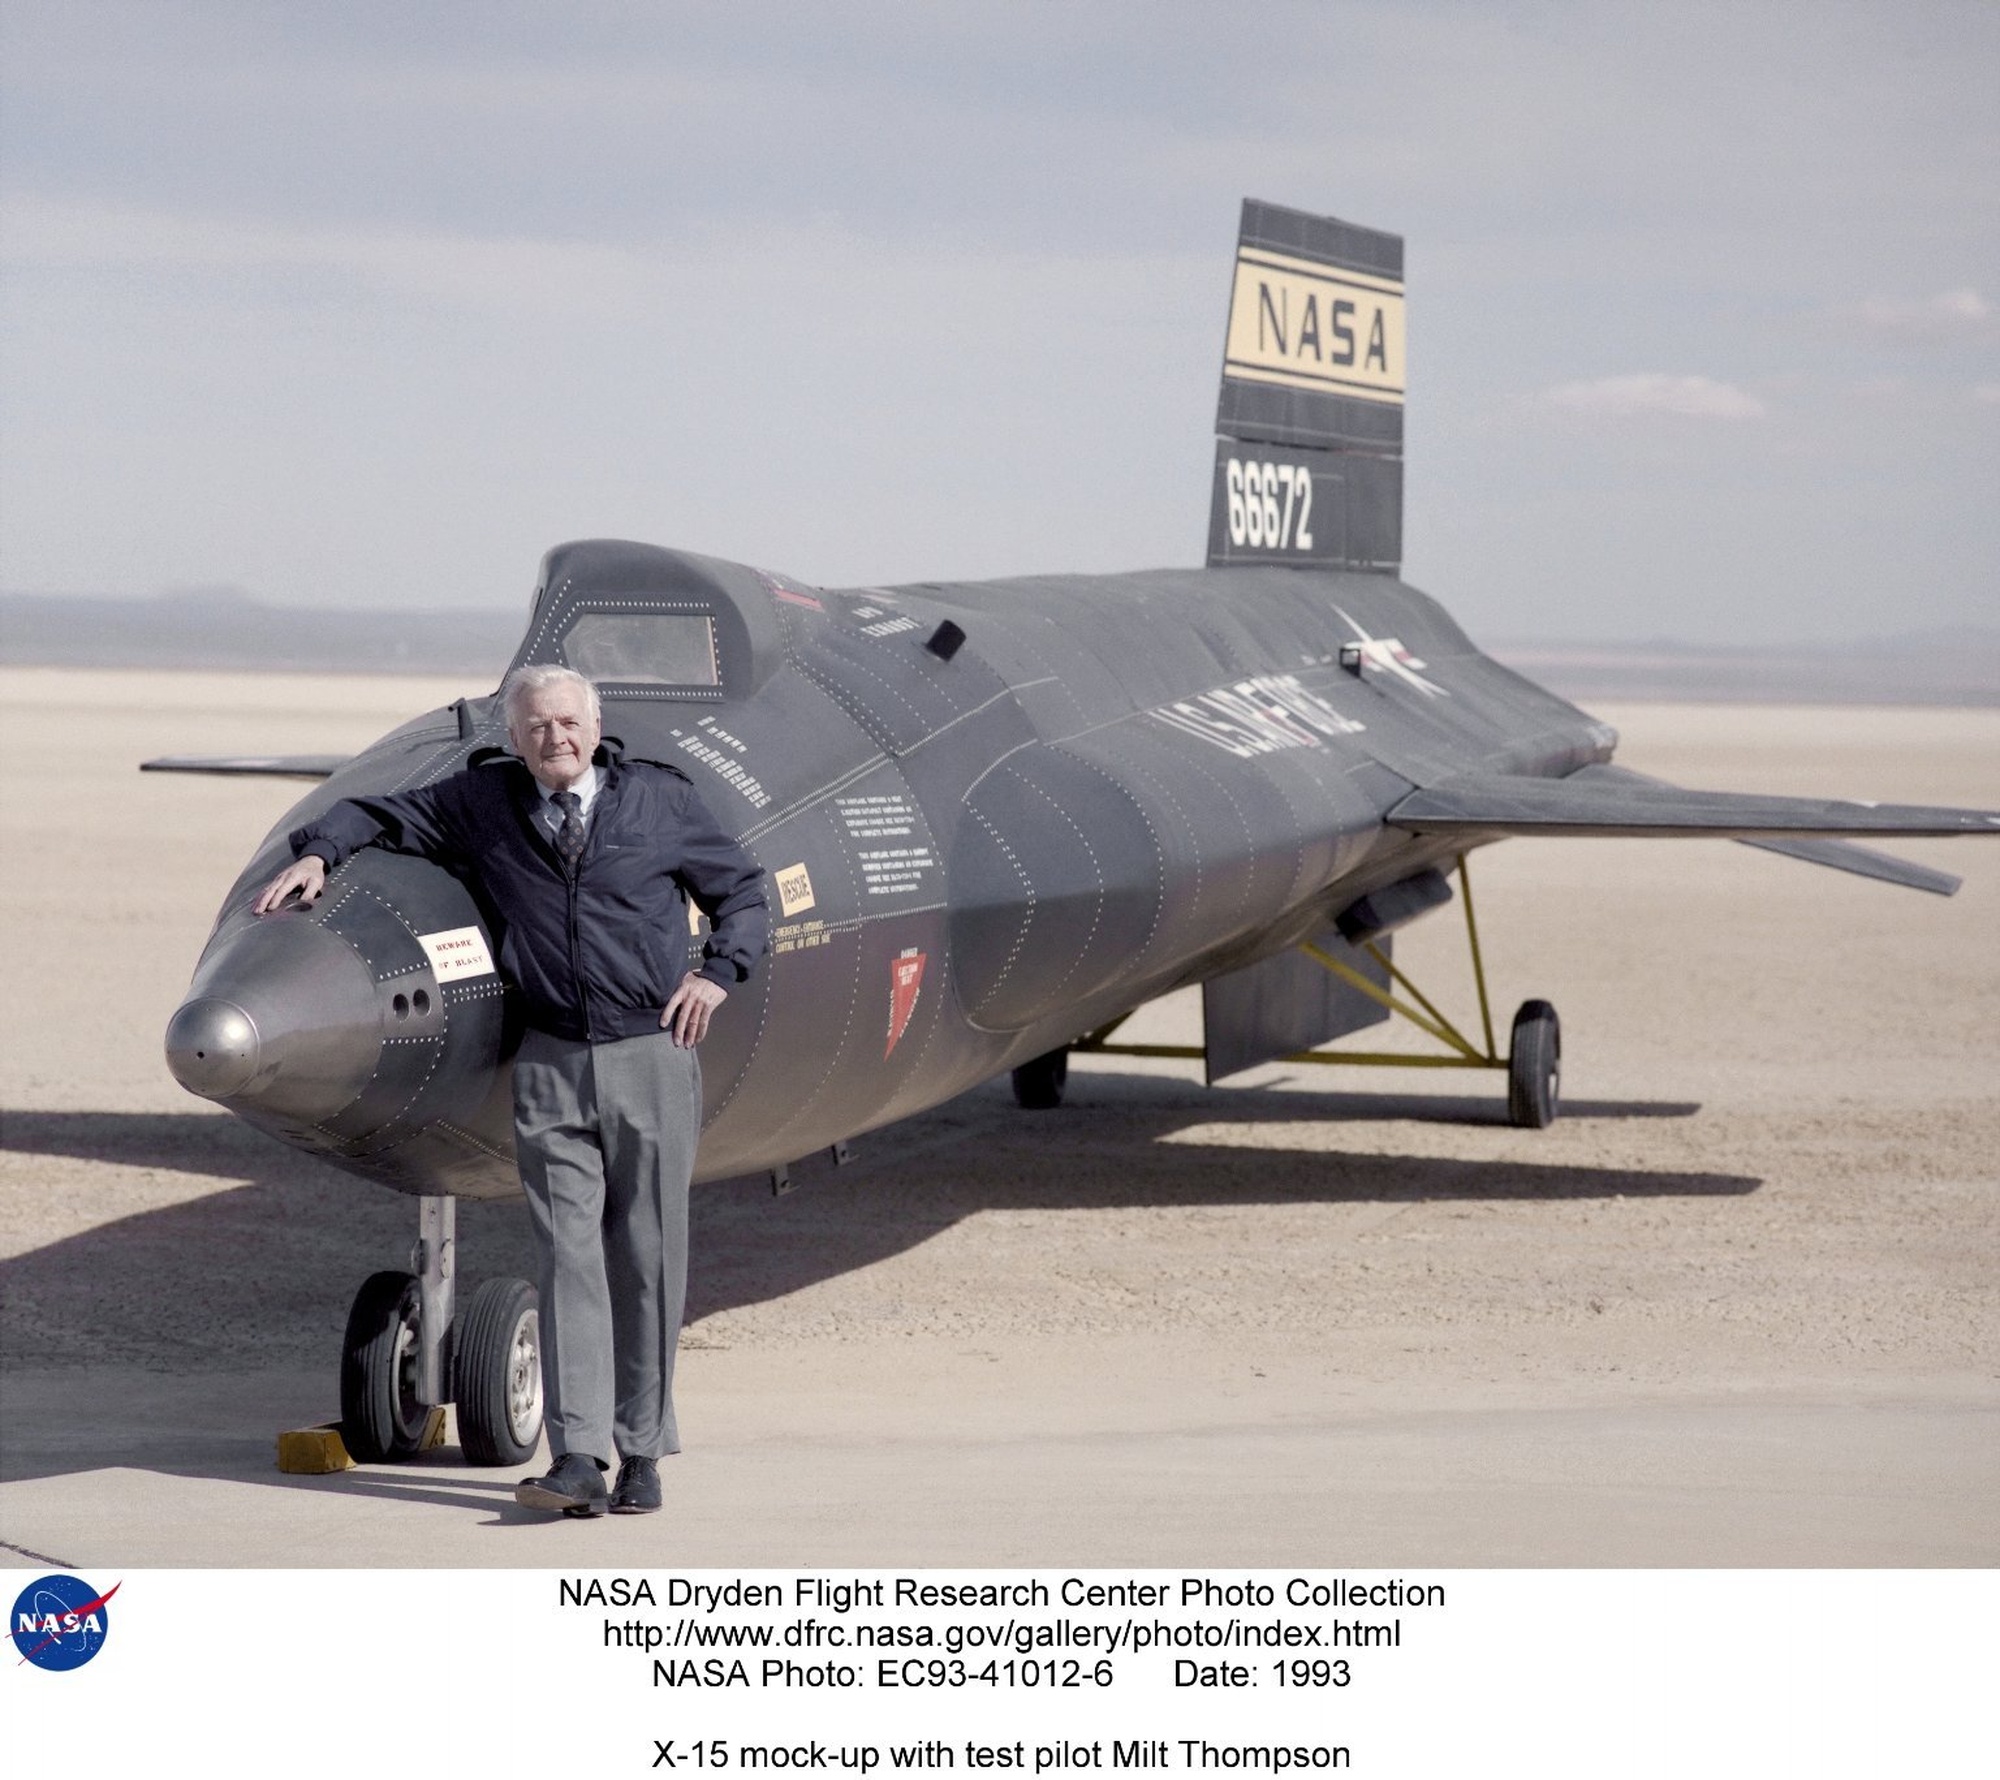 DVIDS Images - X-15 test pilot Milt Thompson